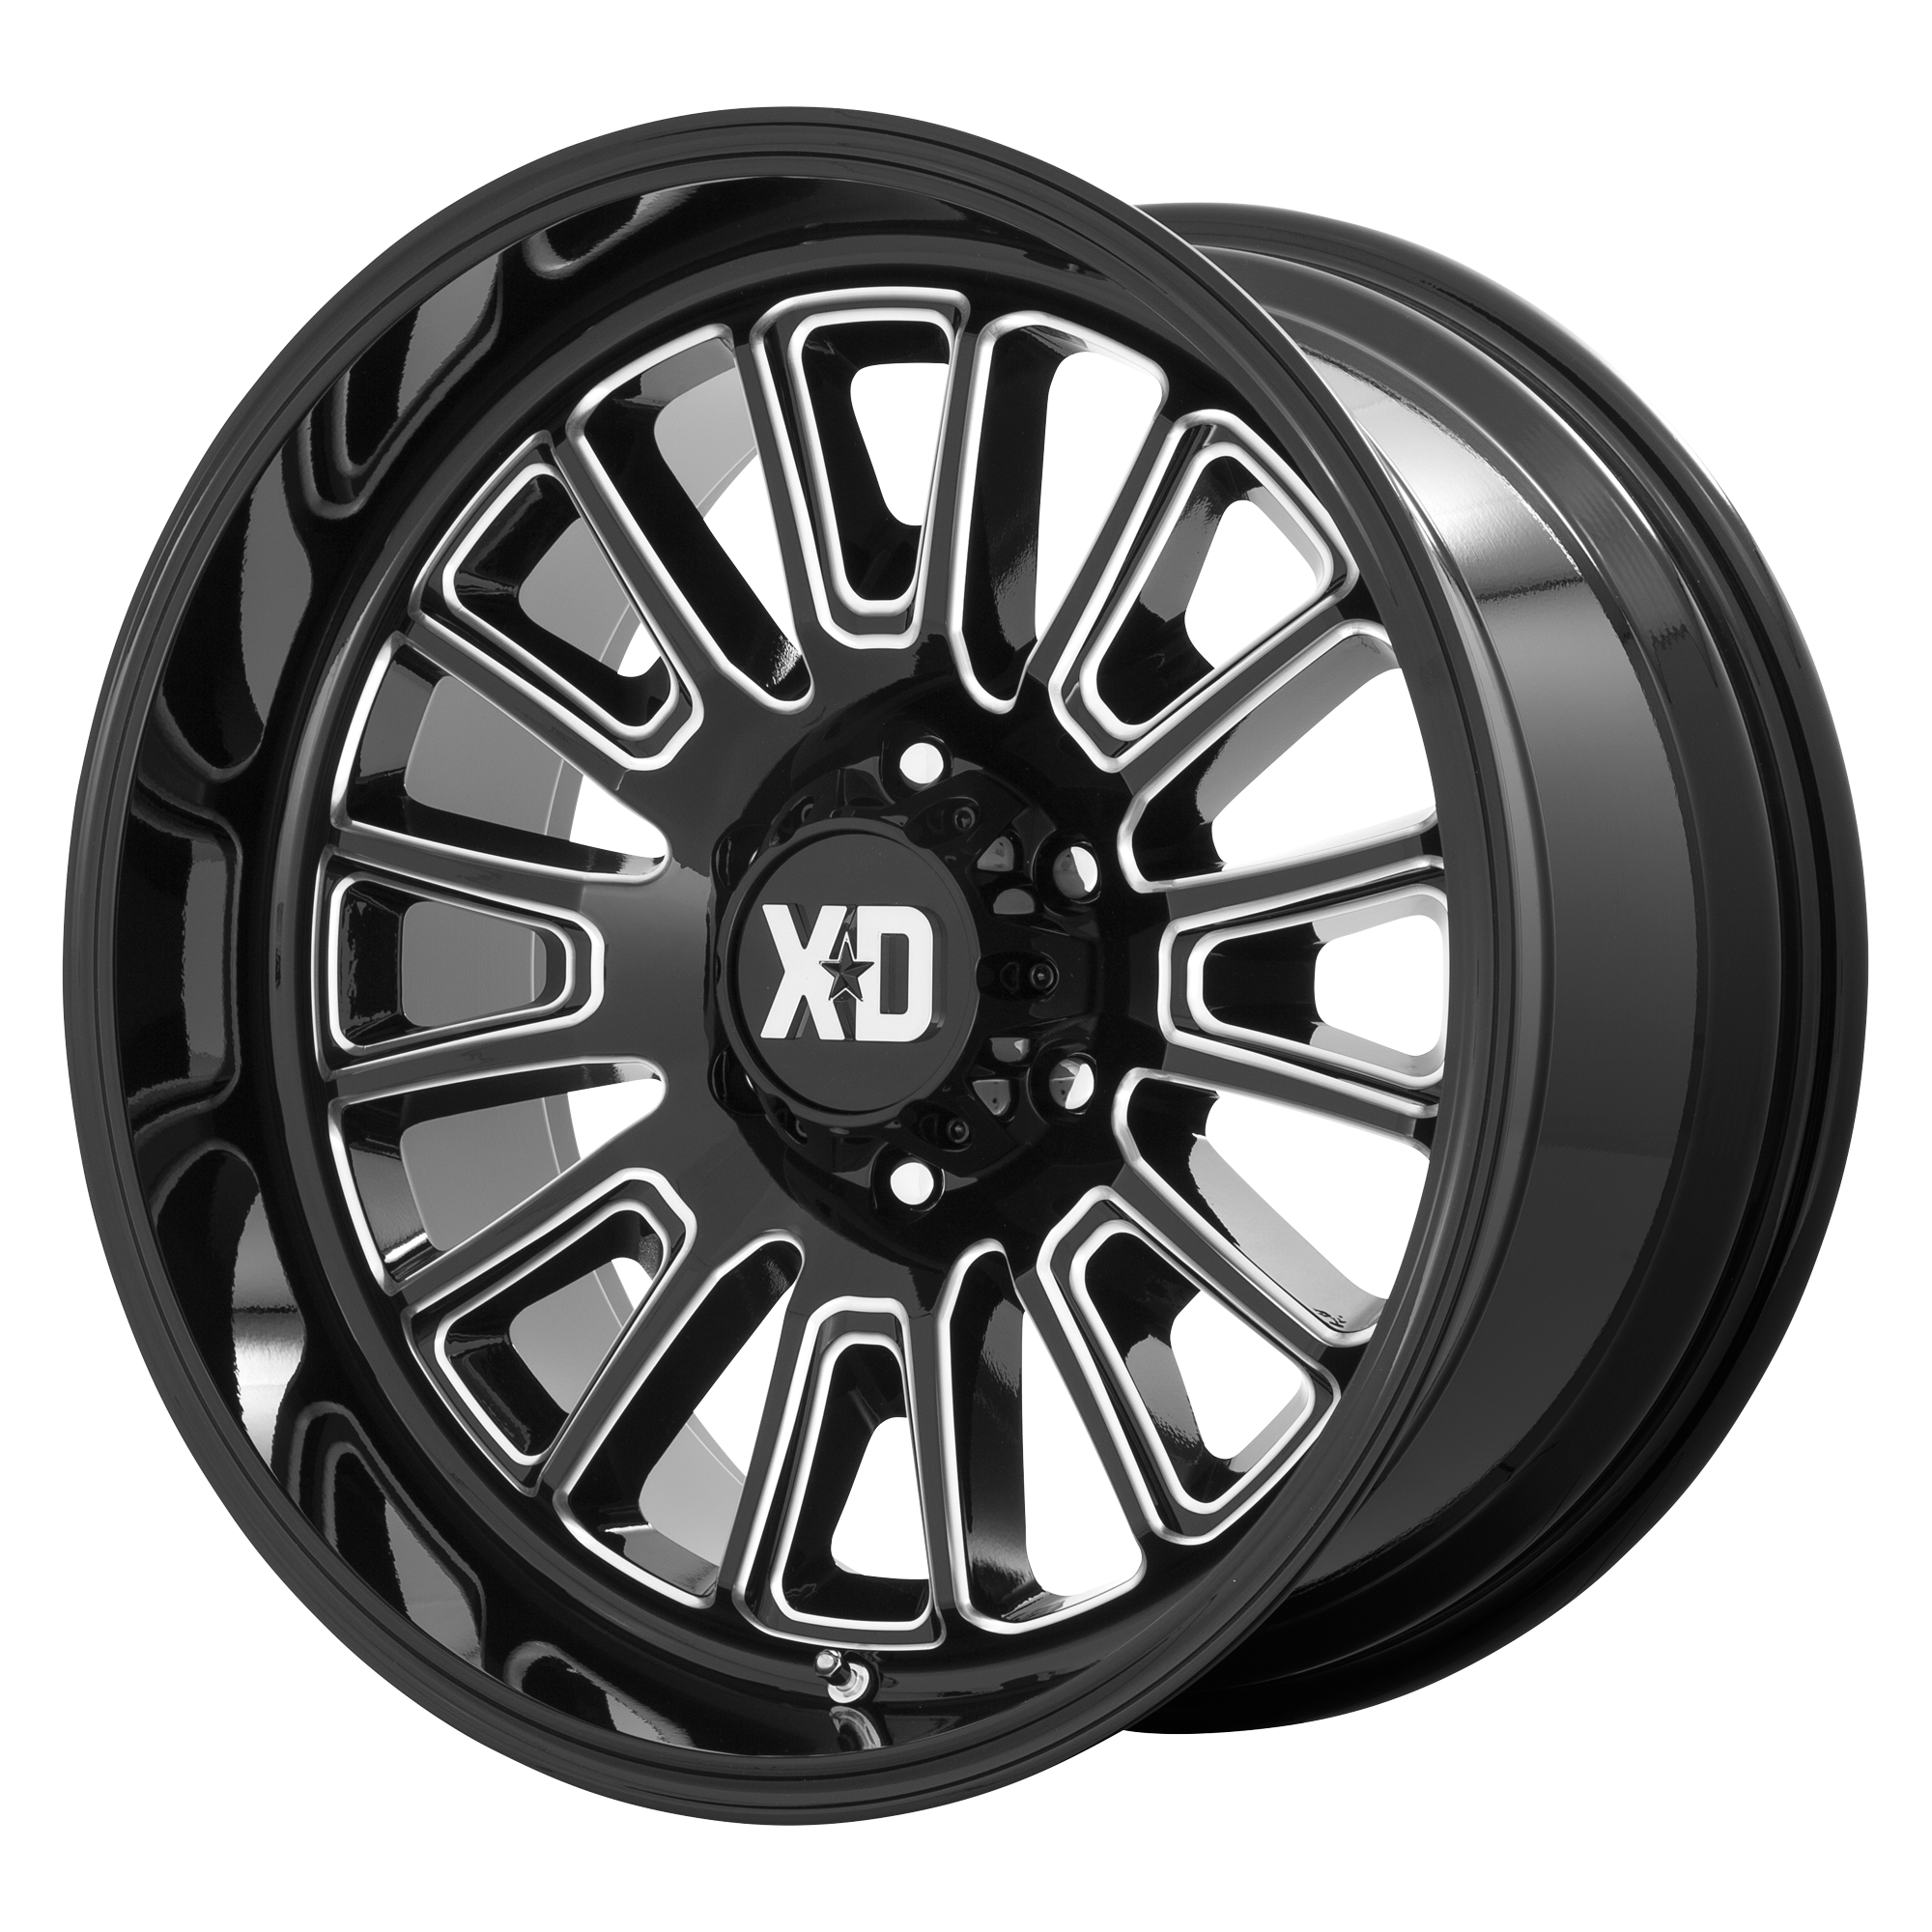 XD 20"x10" Non-Chrome Gloss Black Milled Custom Wheel ARSWCWXD86421085318N